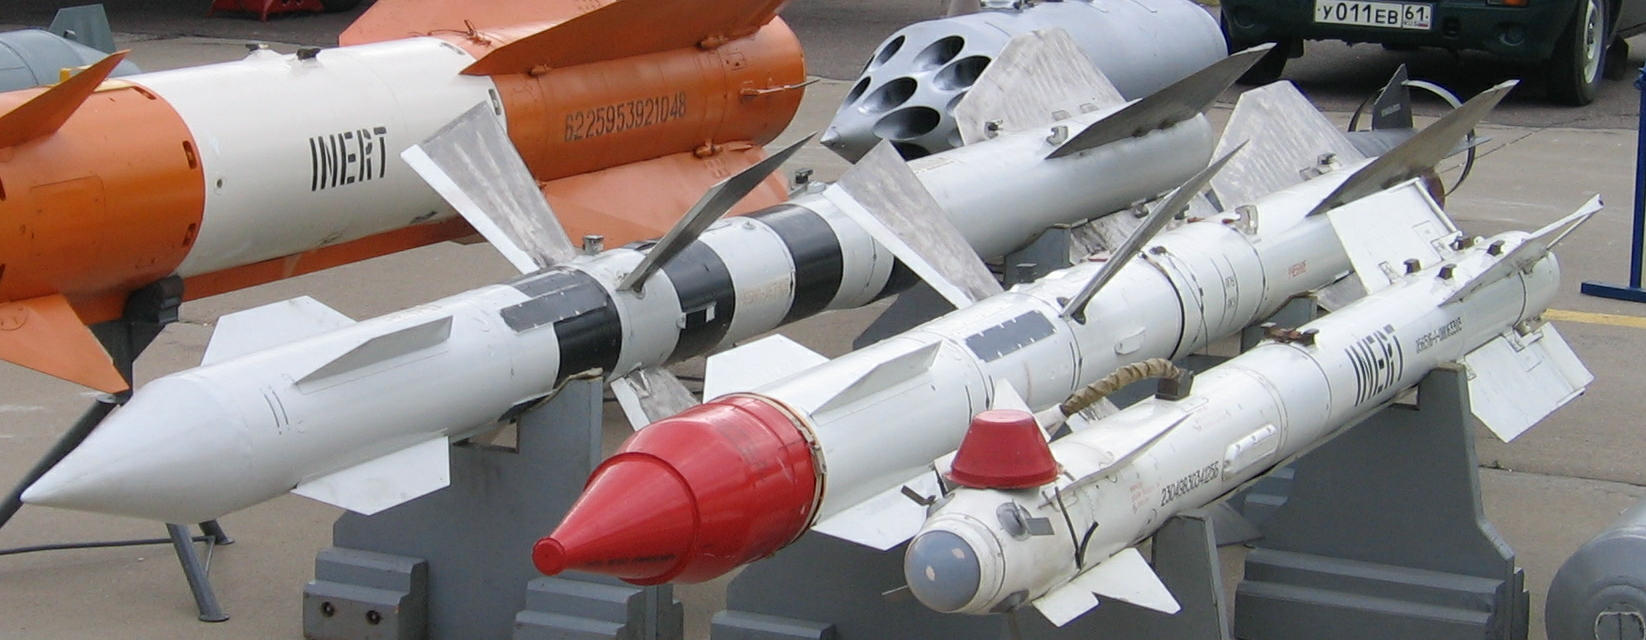 Ракеты класса «воздух-воздух» ввс китая - инвоен info